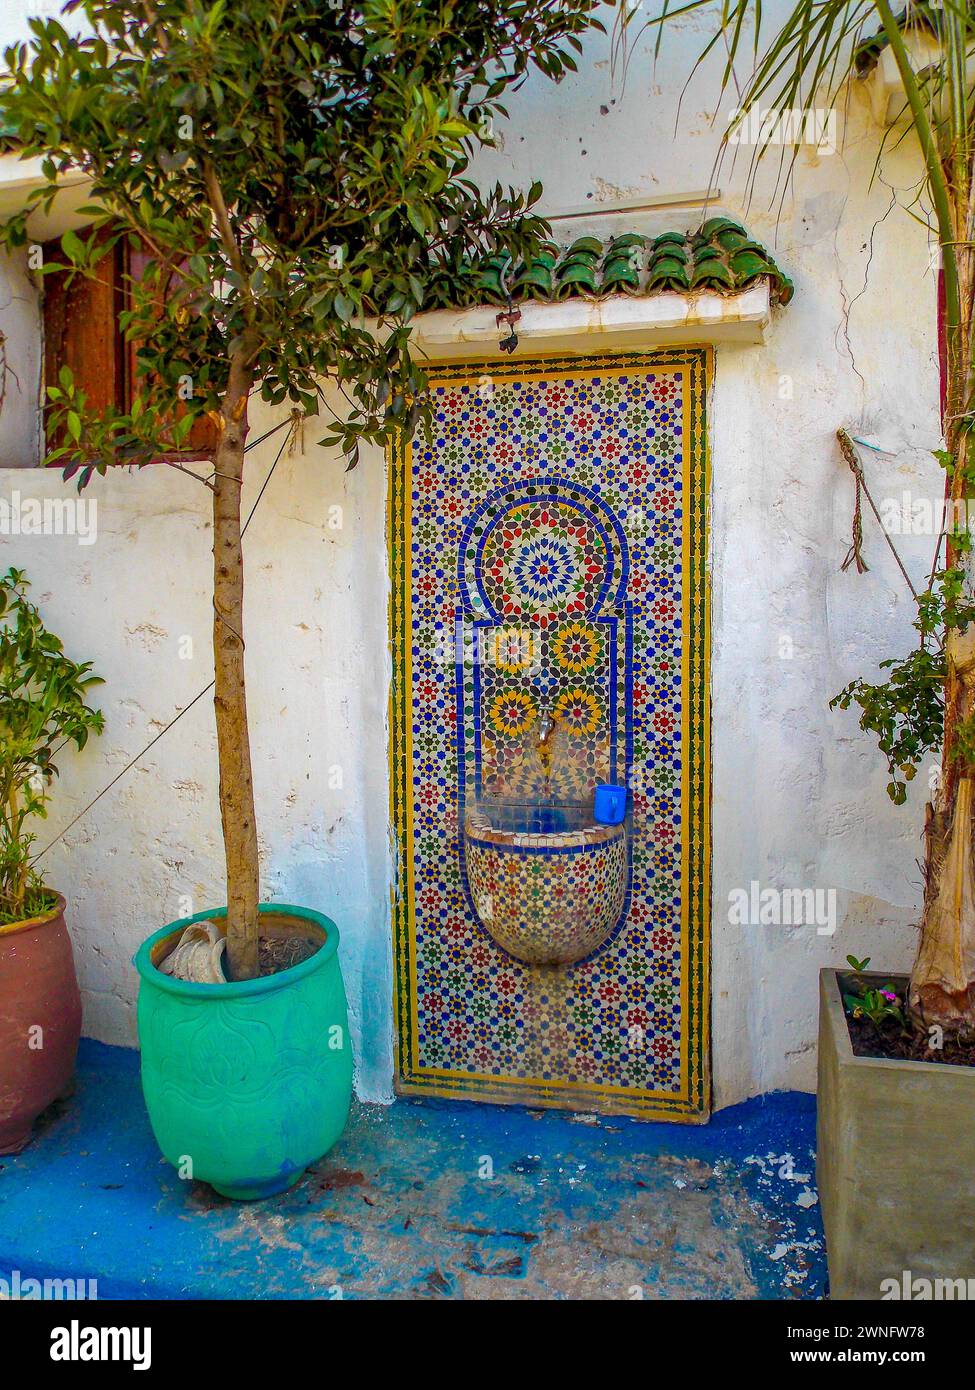 Splendida fontana con decorazioni ornamentali tipiche dell'architettura marocchina Foto Stock